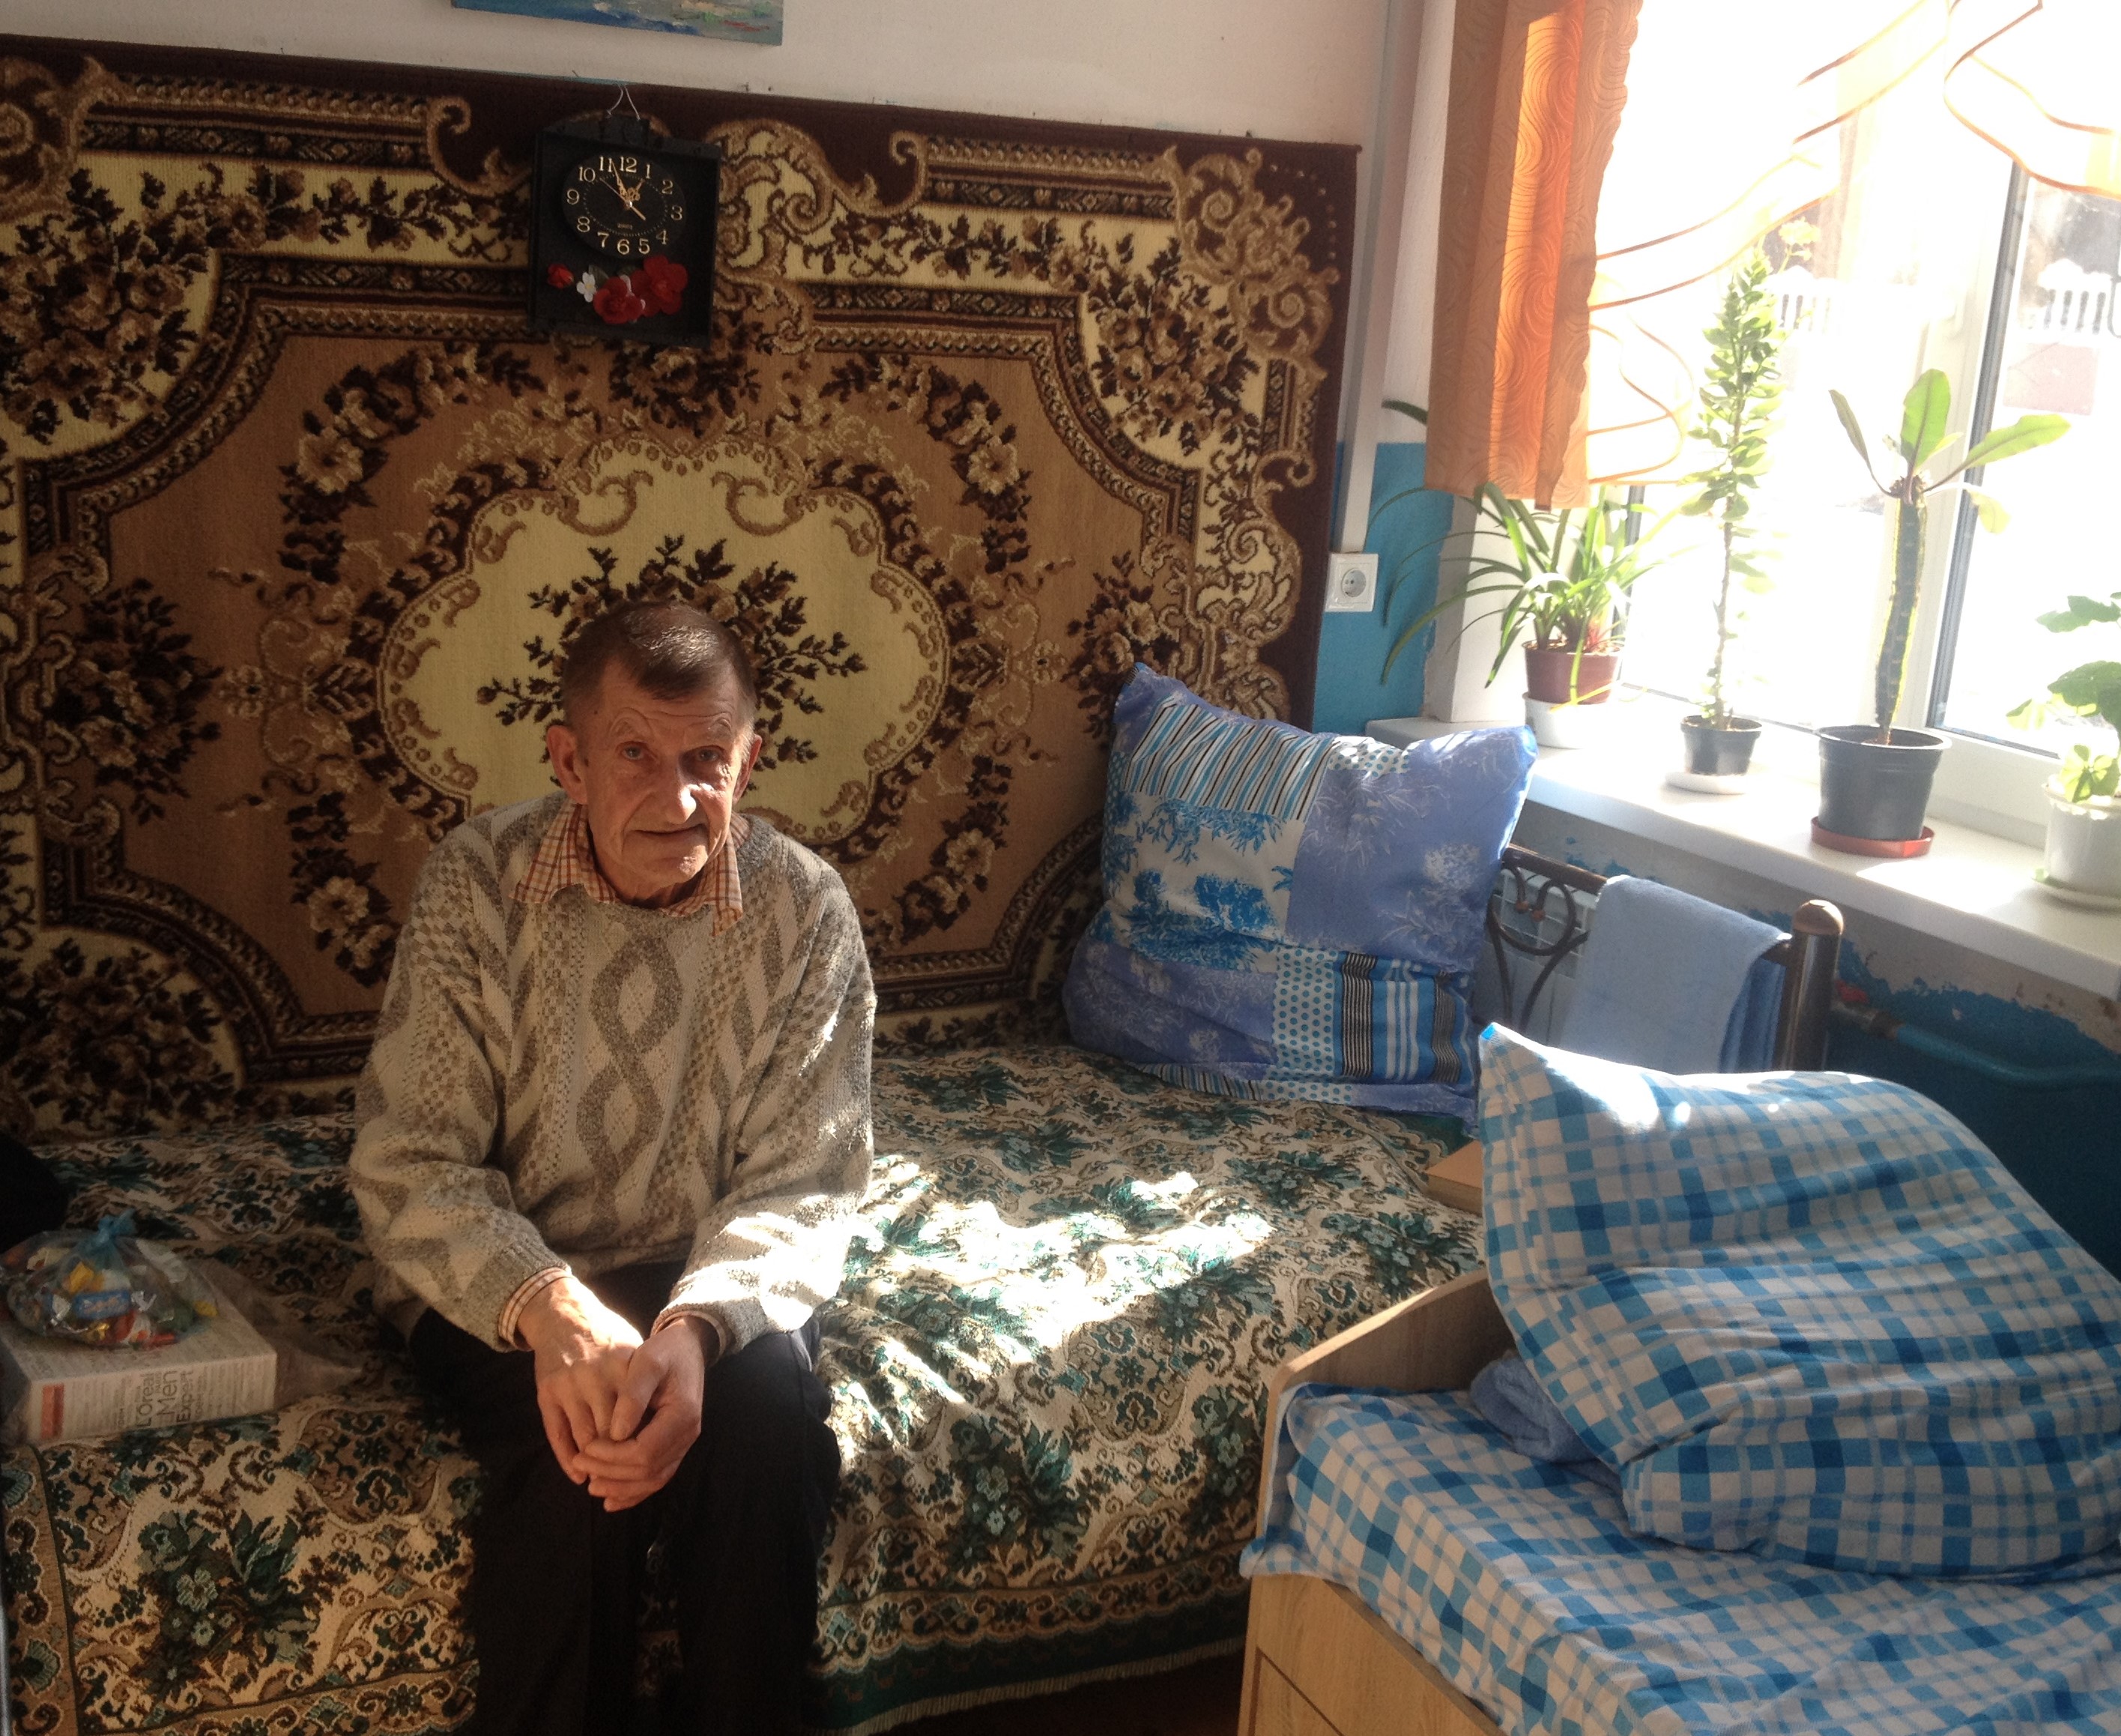 Старость бывает разной: как живется старикам в доме престарелых